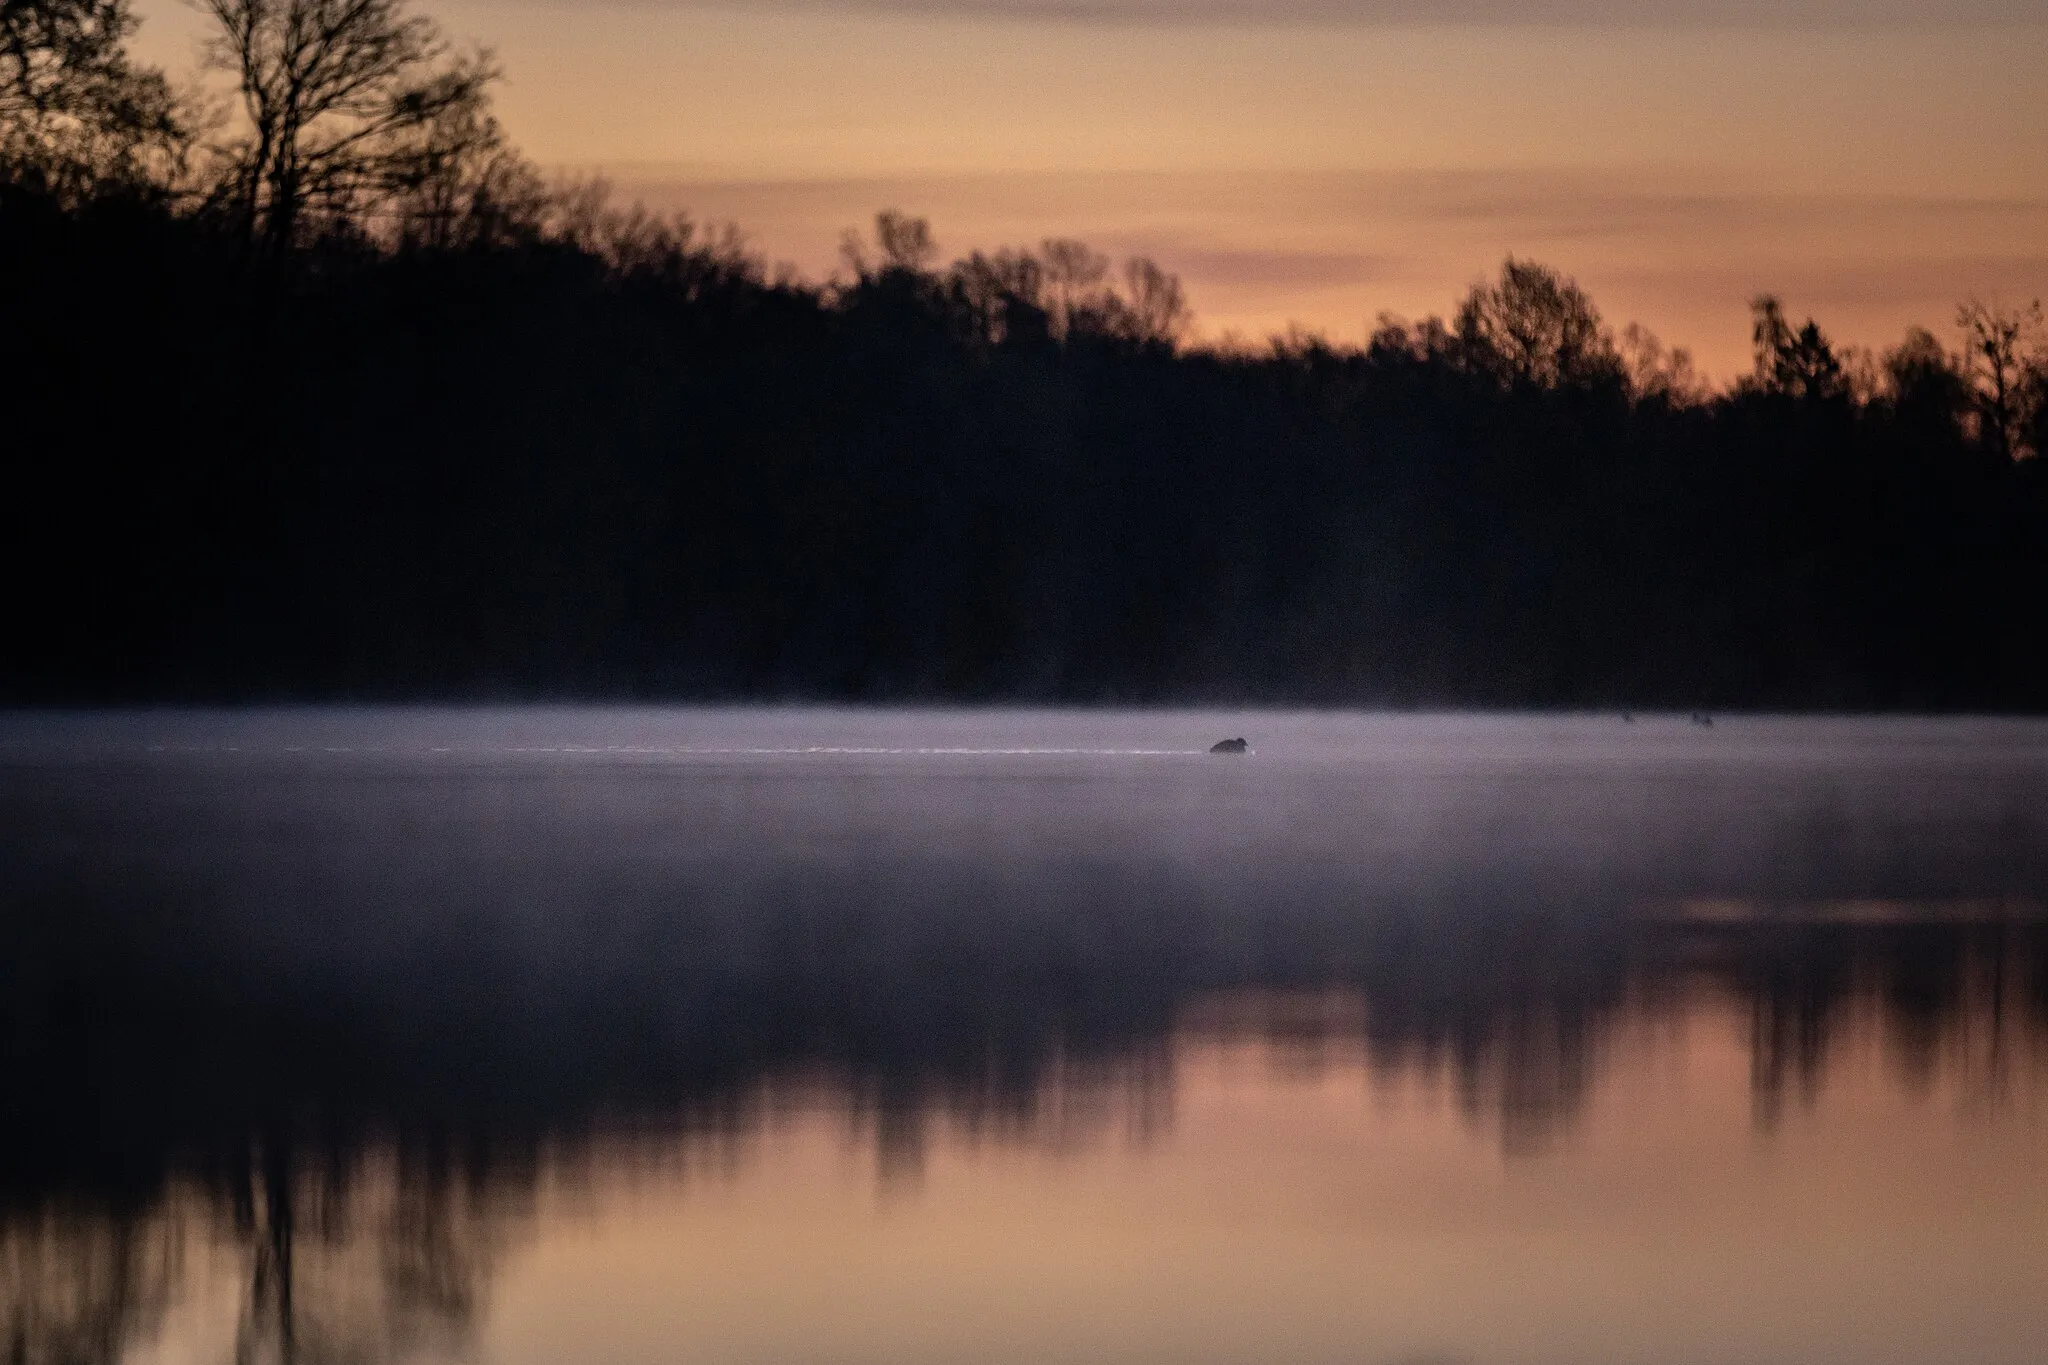 Photo showing: Der Professorenweiher liegt in leichtem Nebel vor Sonnenaufgang während eine Ente quer durch das Bild schwimmt